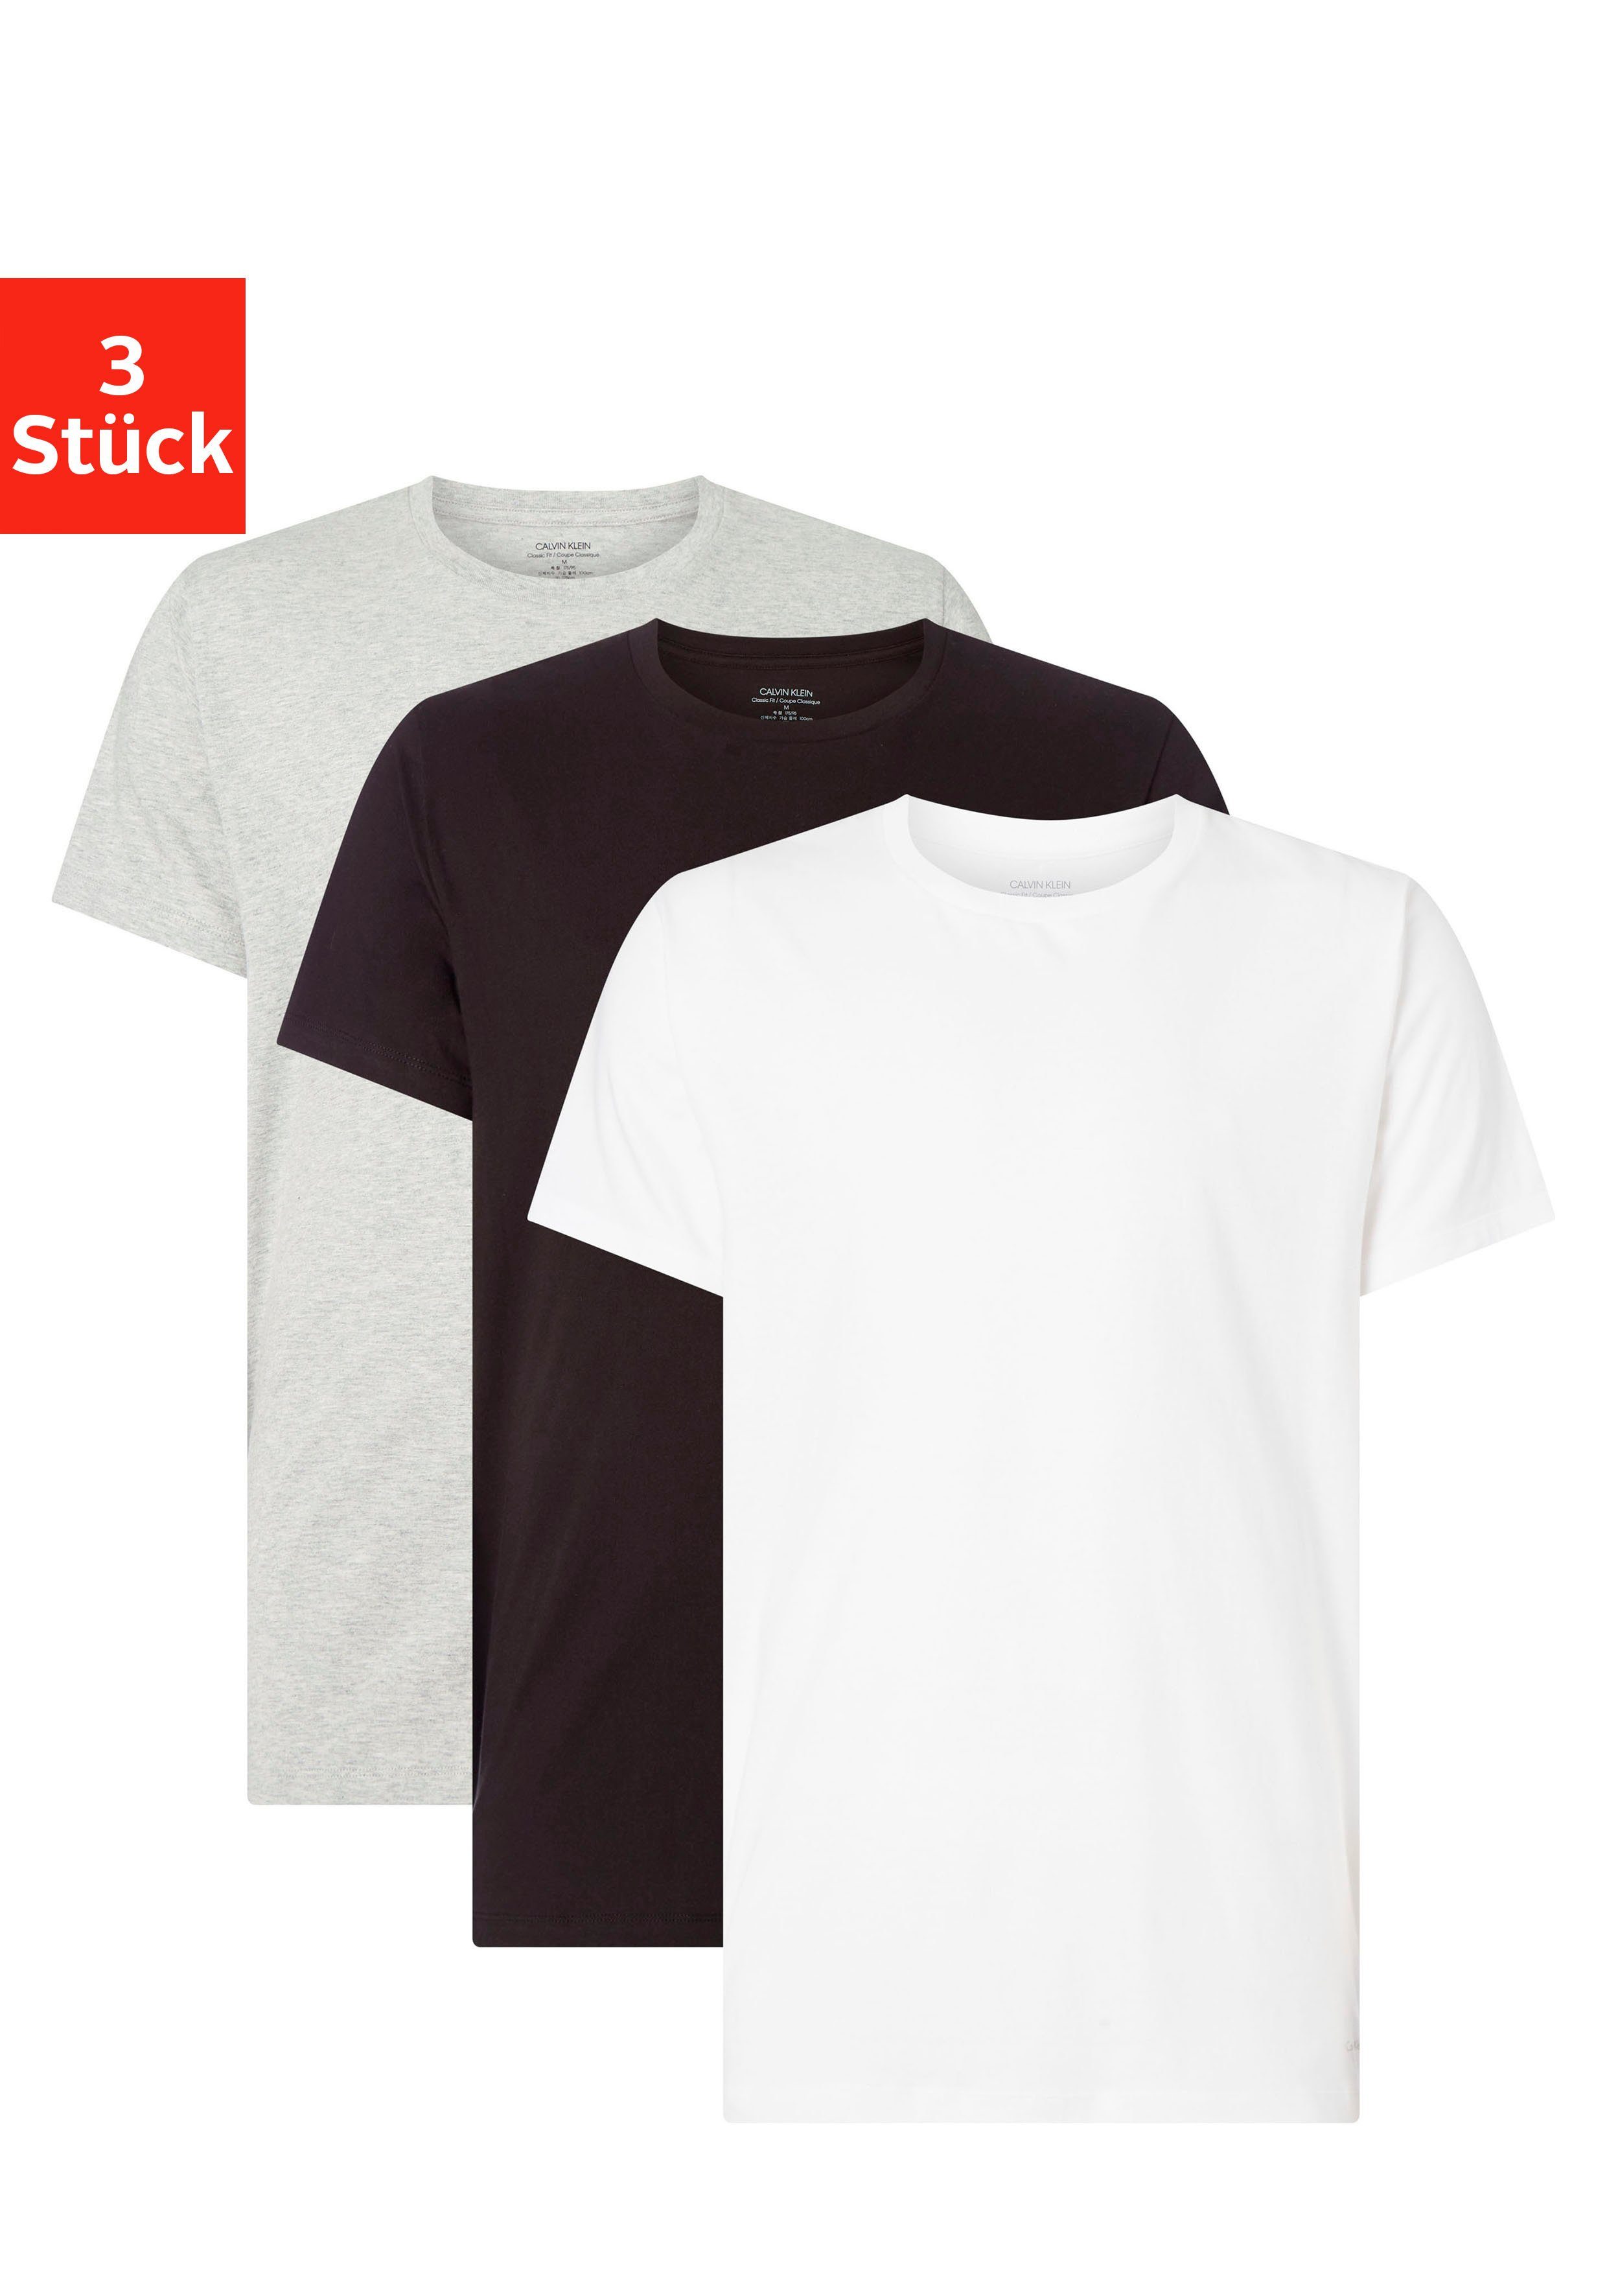 grau-meliert, T-Shirt uni schwarz, Klein Calvin (3er-Pack) Underwear weiß